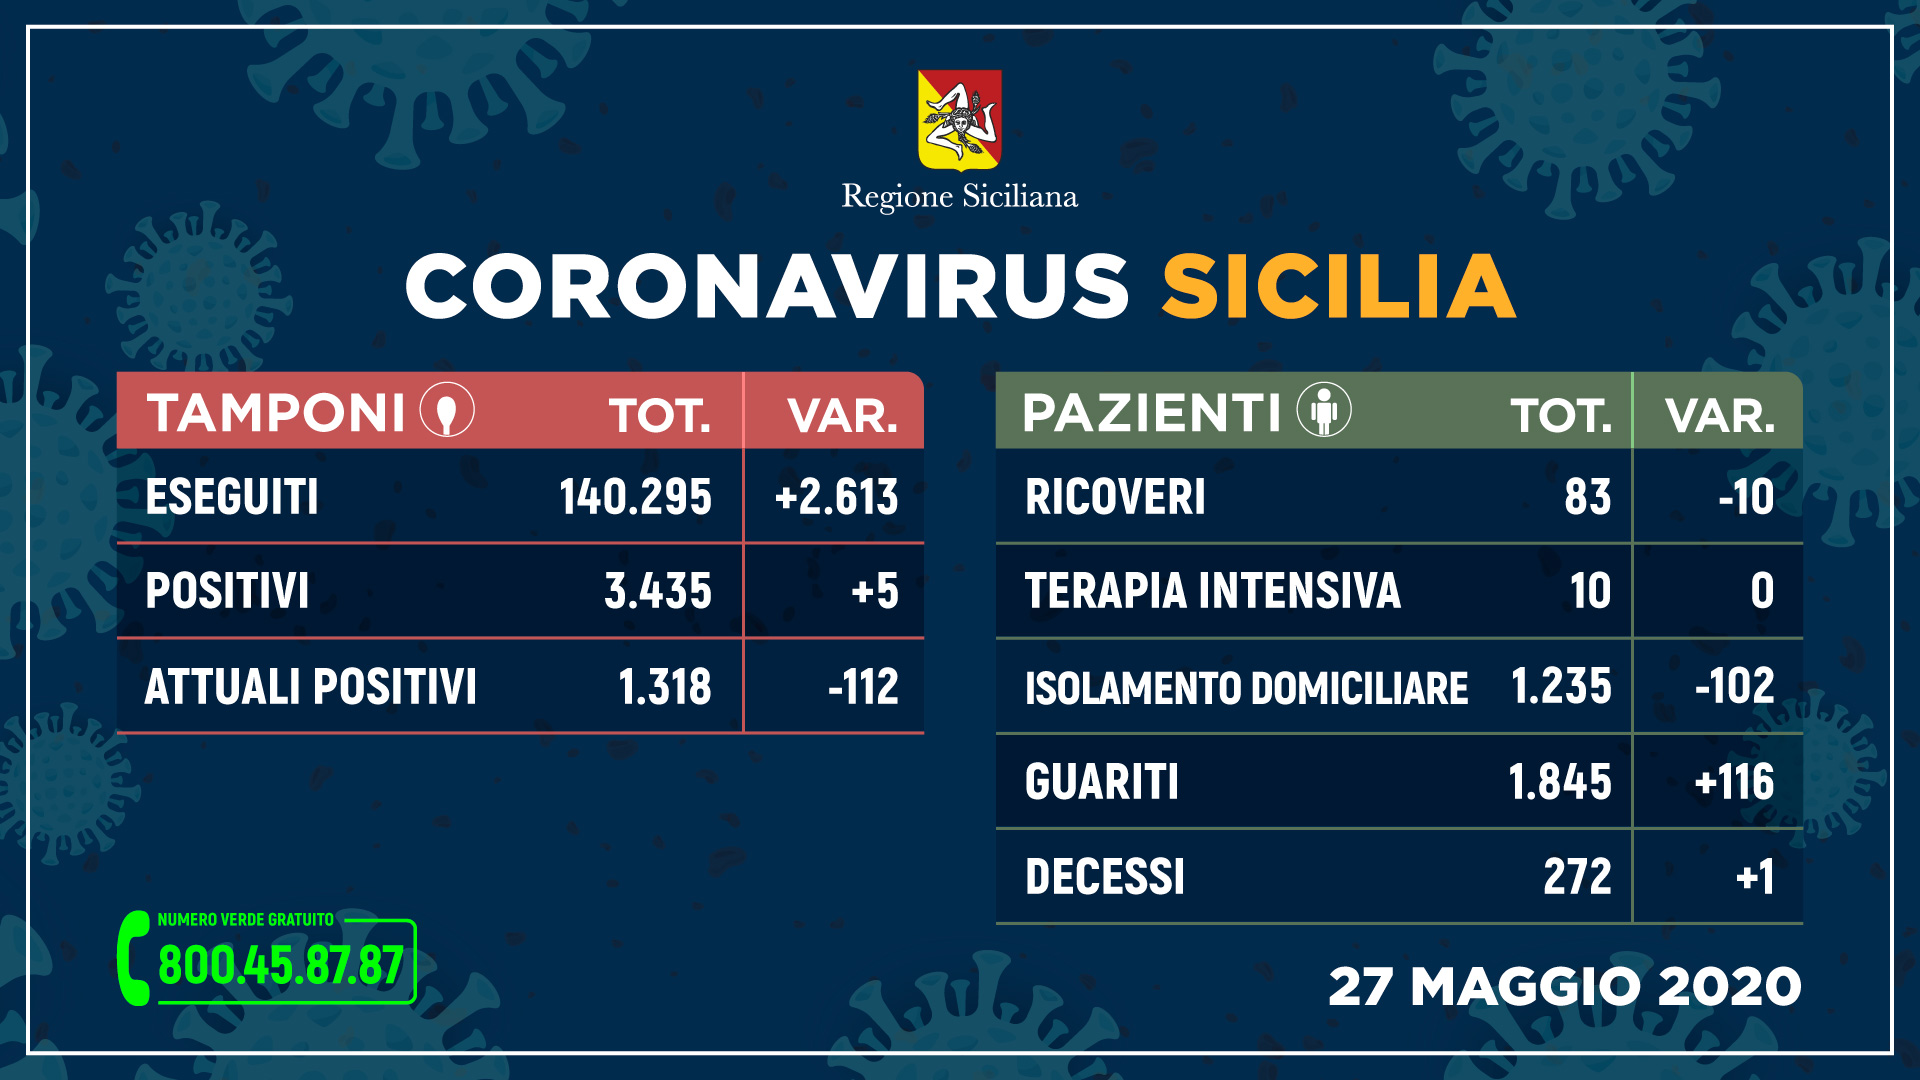 Coronavirus, in Sicilia 5 contagiati nelle ultime 24 ore